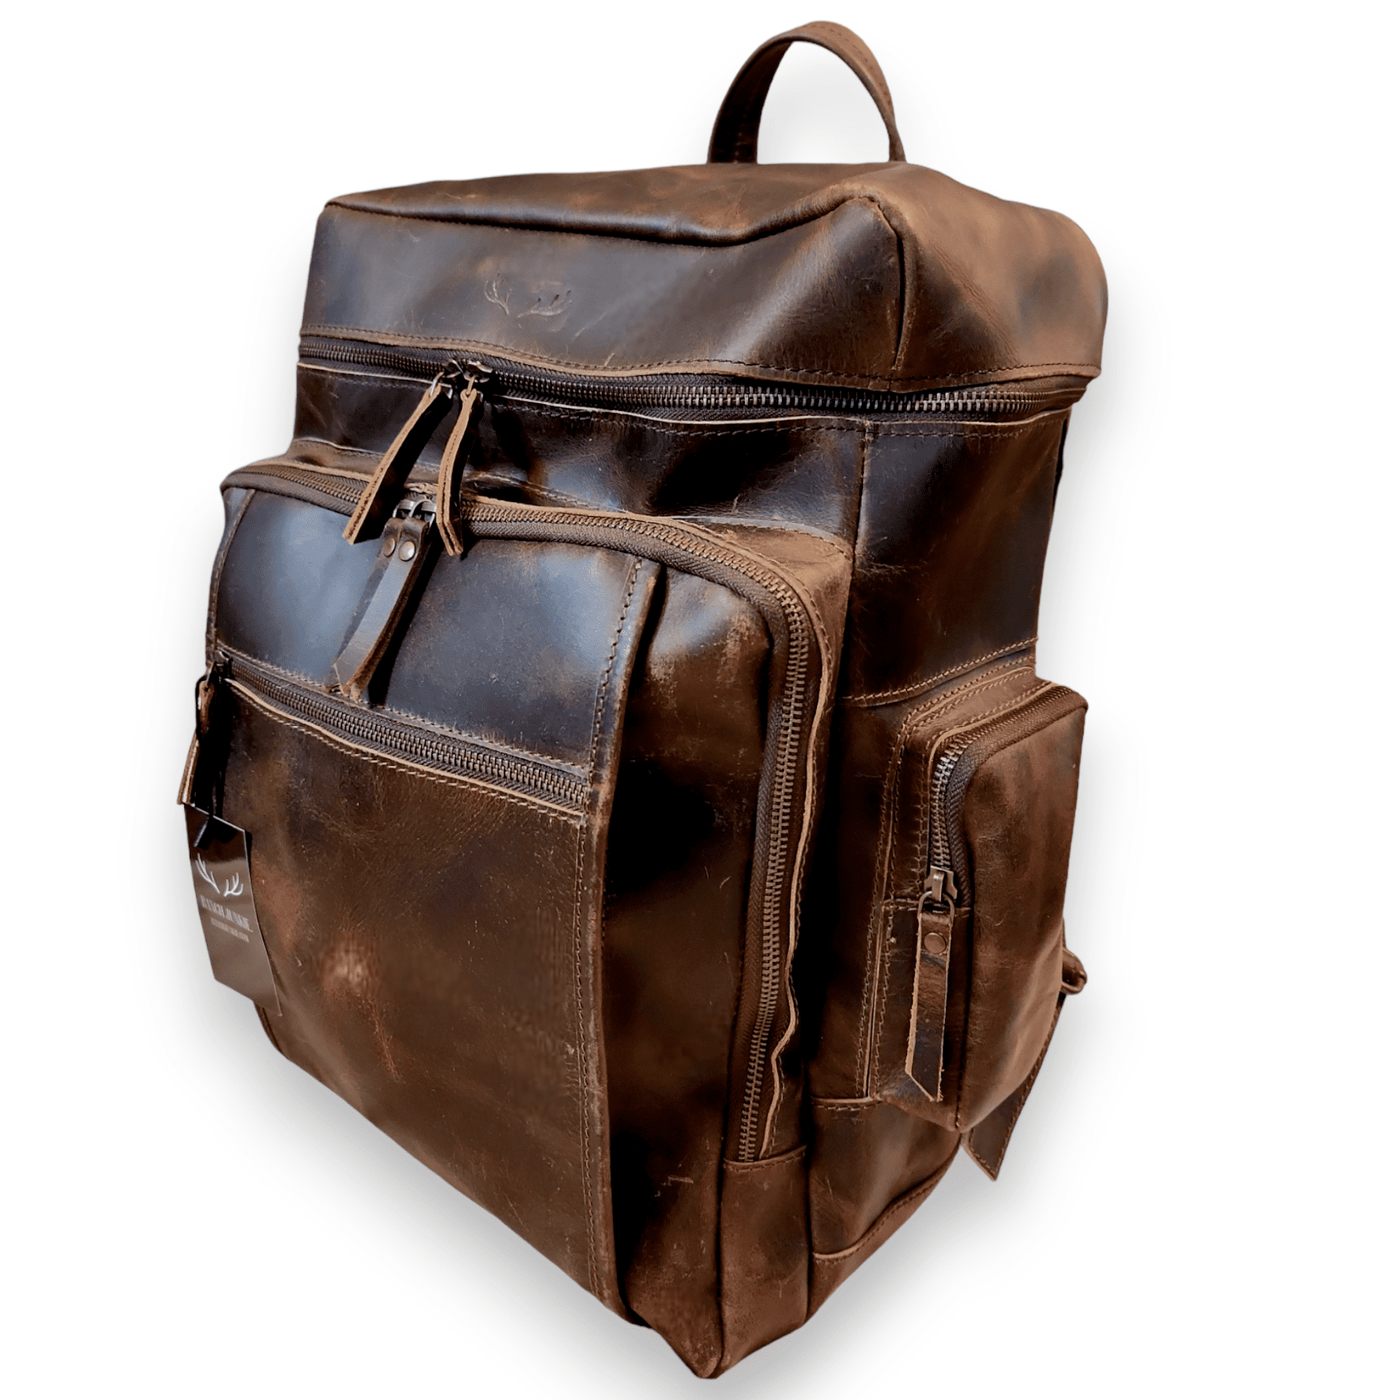 The Denali Vintage Leather Weekender Backpack Luggage & BagsRanch Junkie